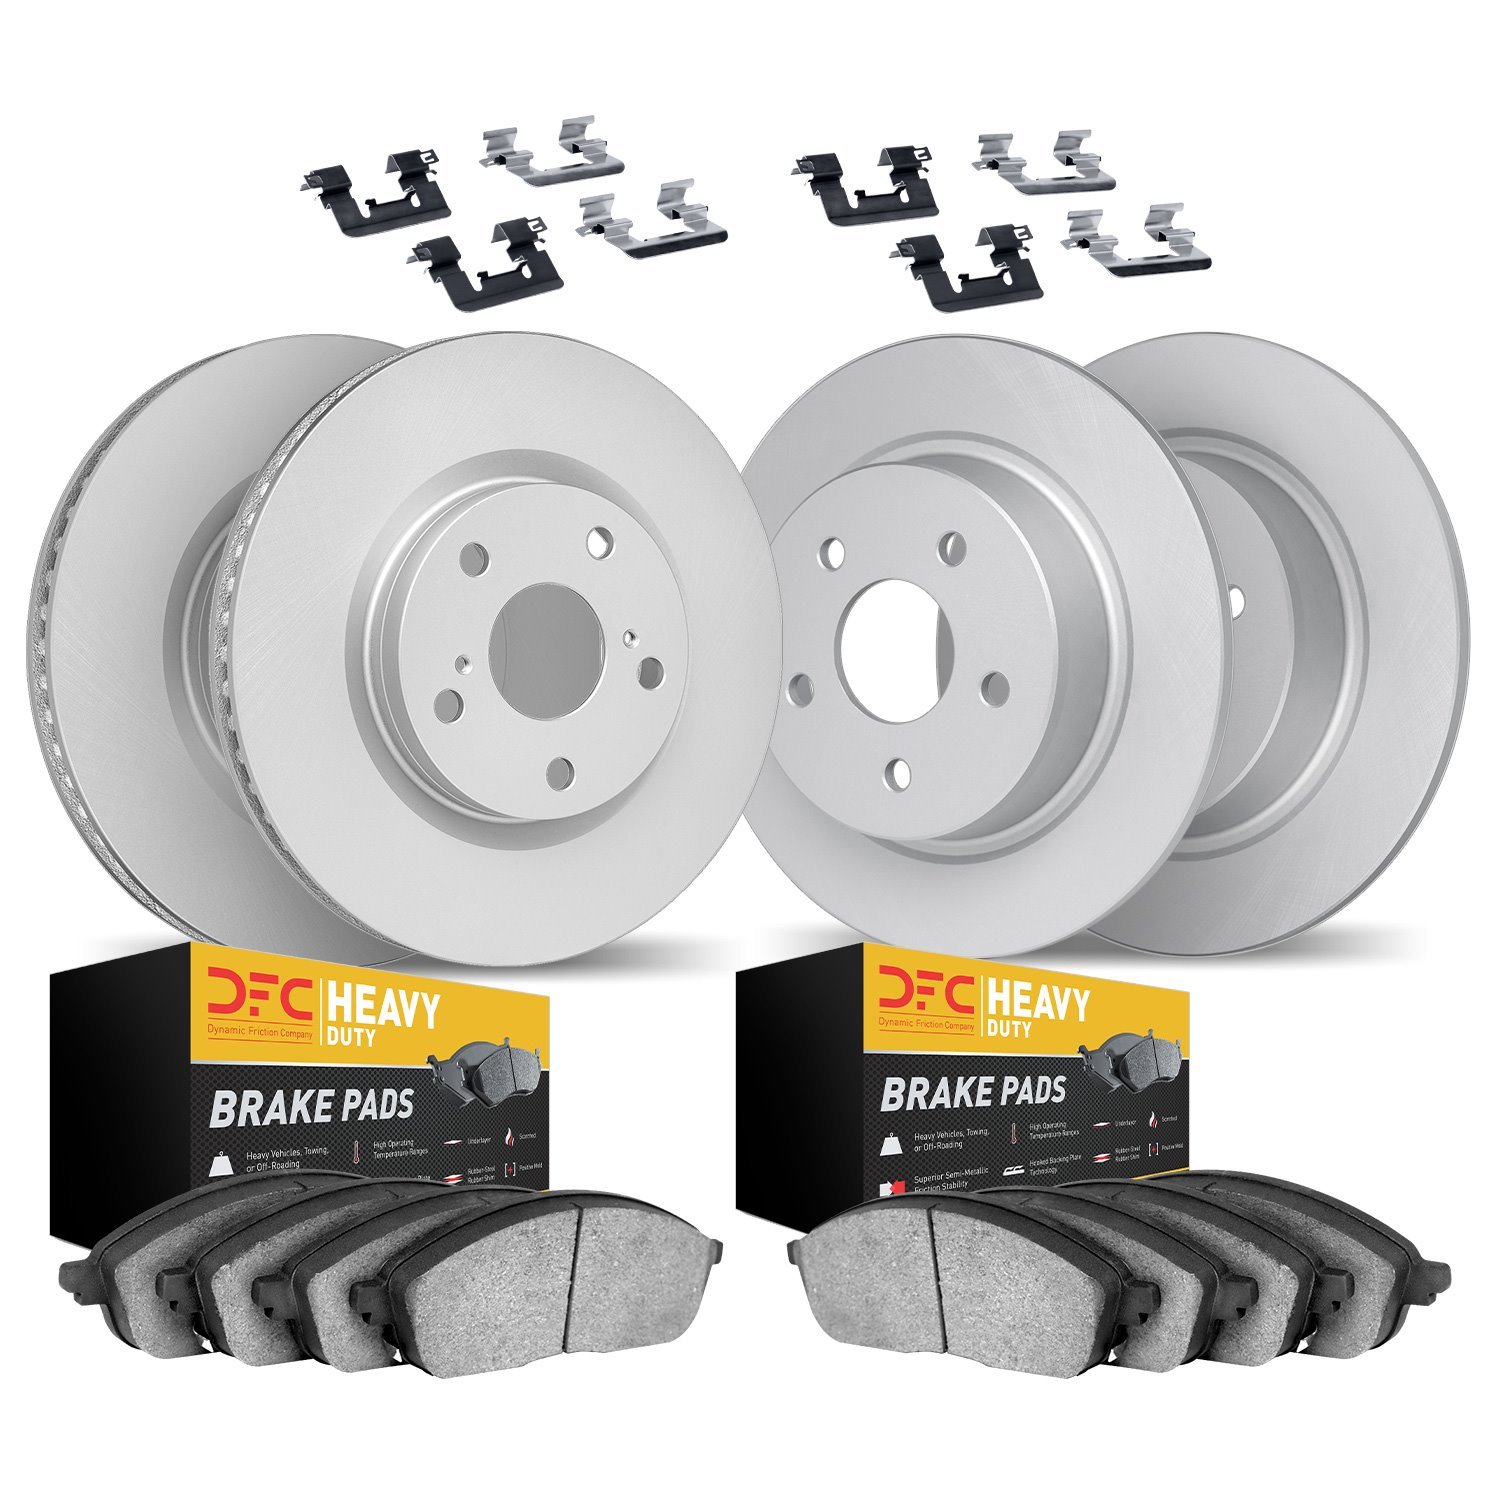 4214-42047 Geospec Brake Rotors w/Heavy-Duty Brake Pads & Hardware, 2012-2018 Mopar, Position: Front and Rear